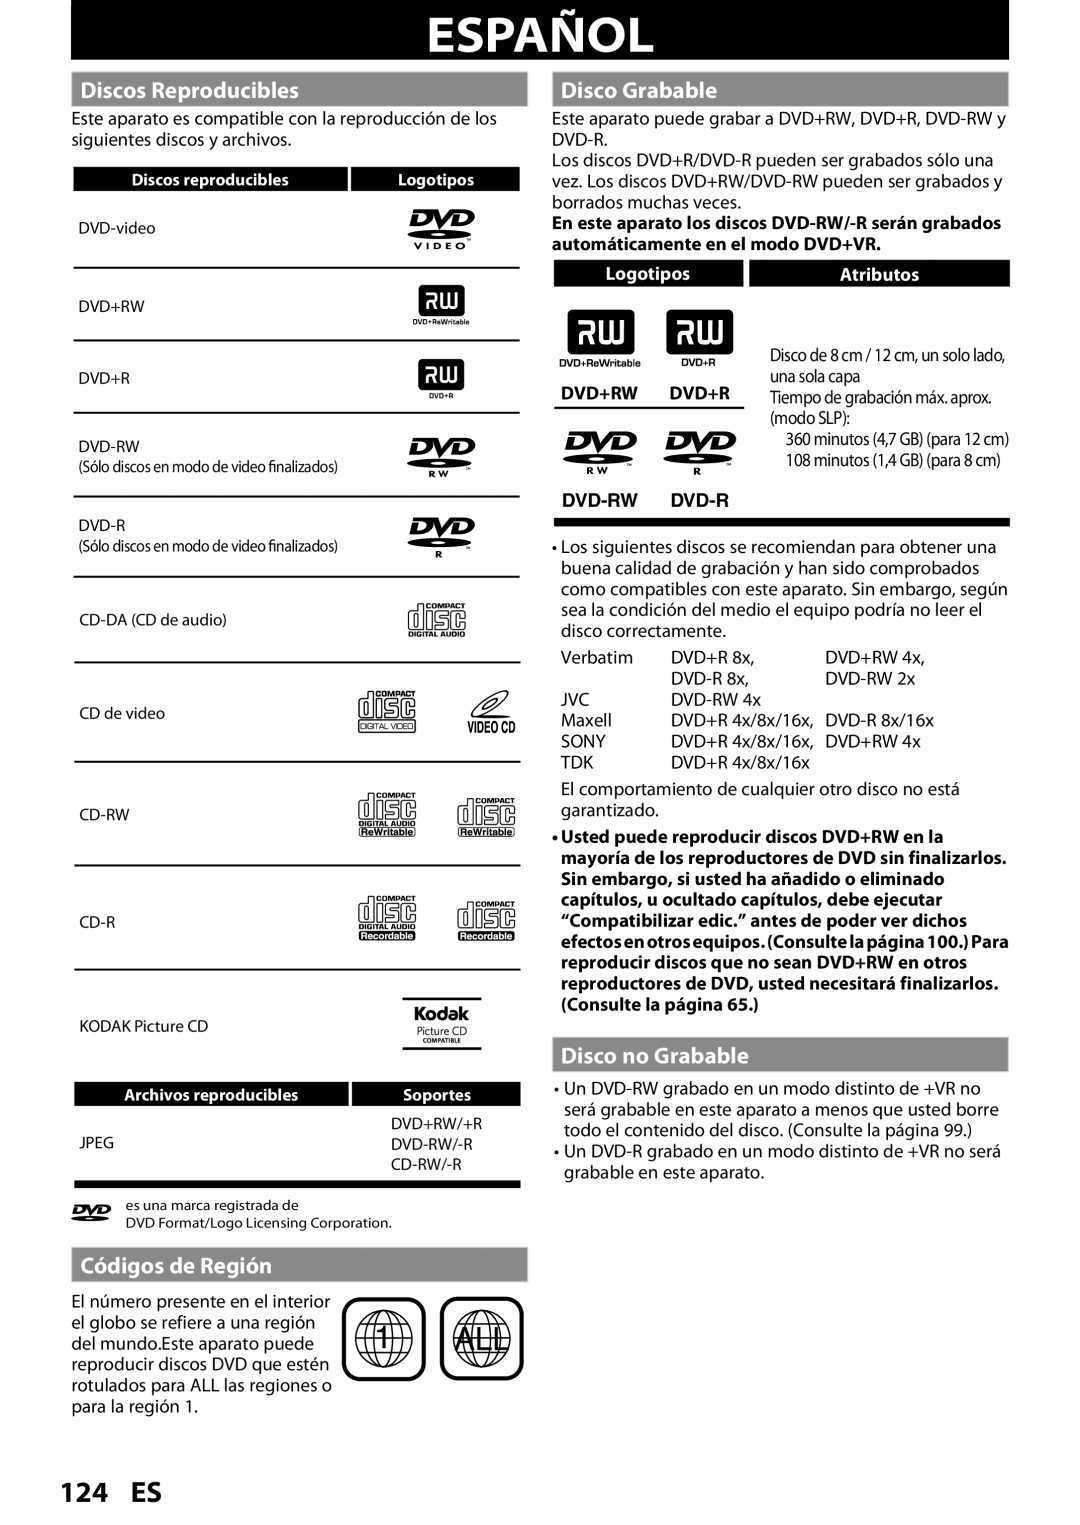 Magnavox MDR535H Español, 124 ES, Discos Reproducibles, Disco Grabable, Disco no Grabable, Códigos de Región, Dvd+Rw Dvd+R 